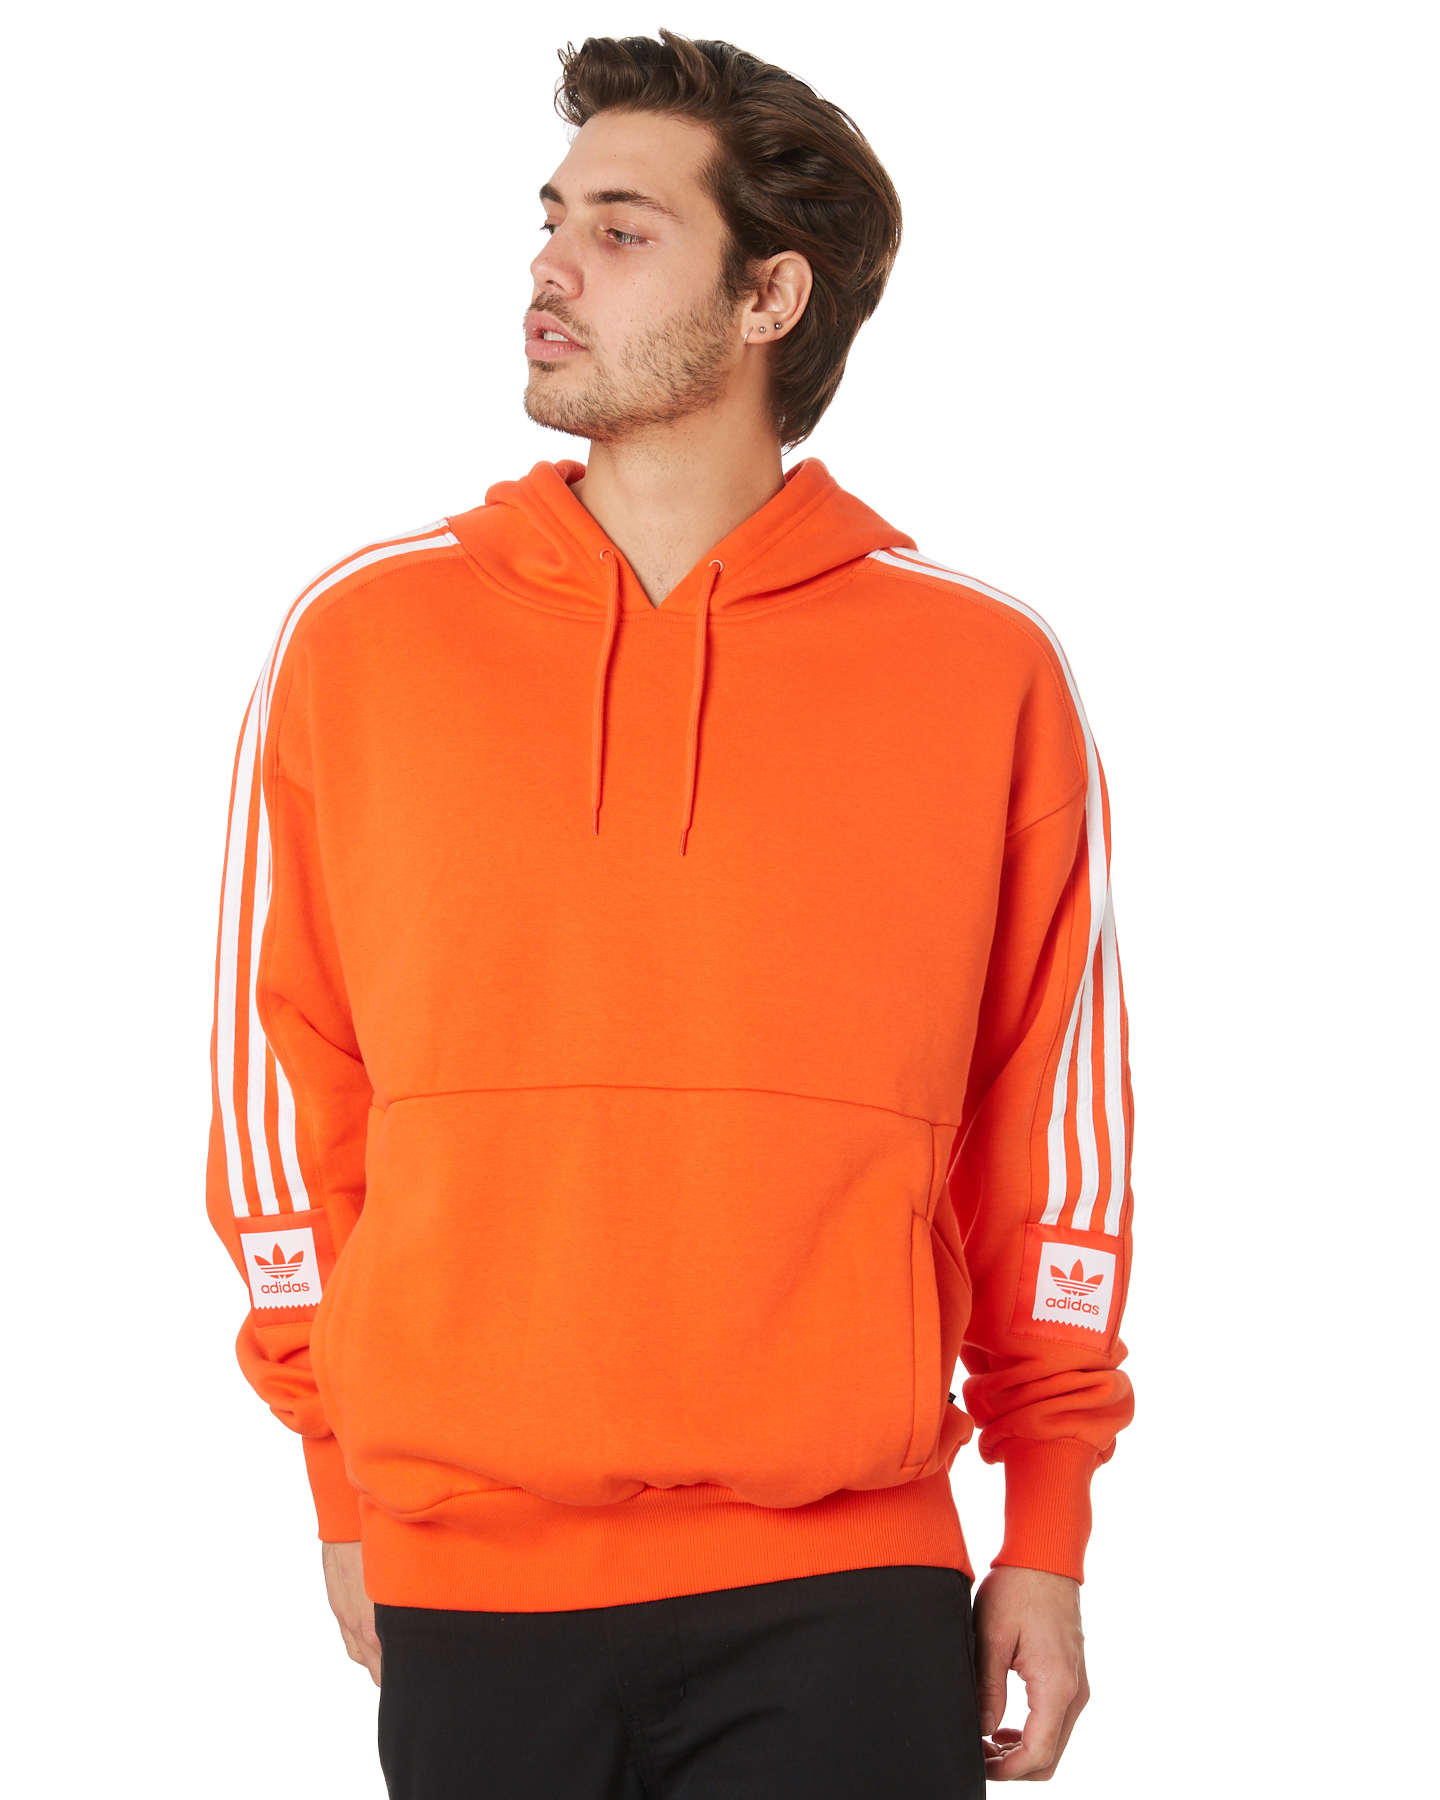 adidas orange hoodie mens